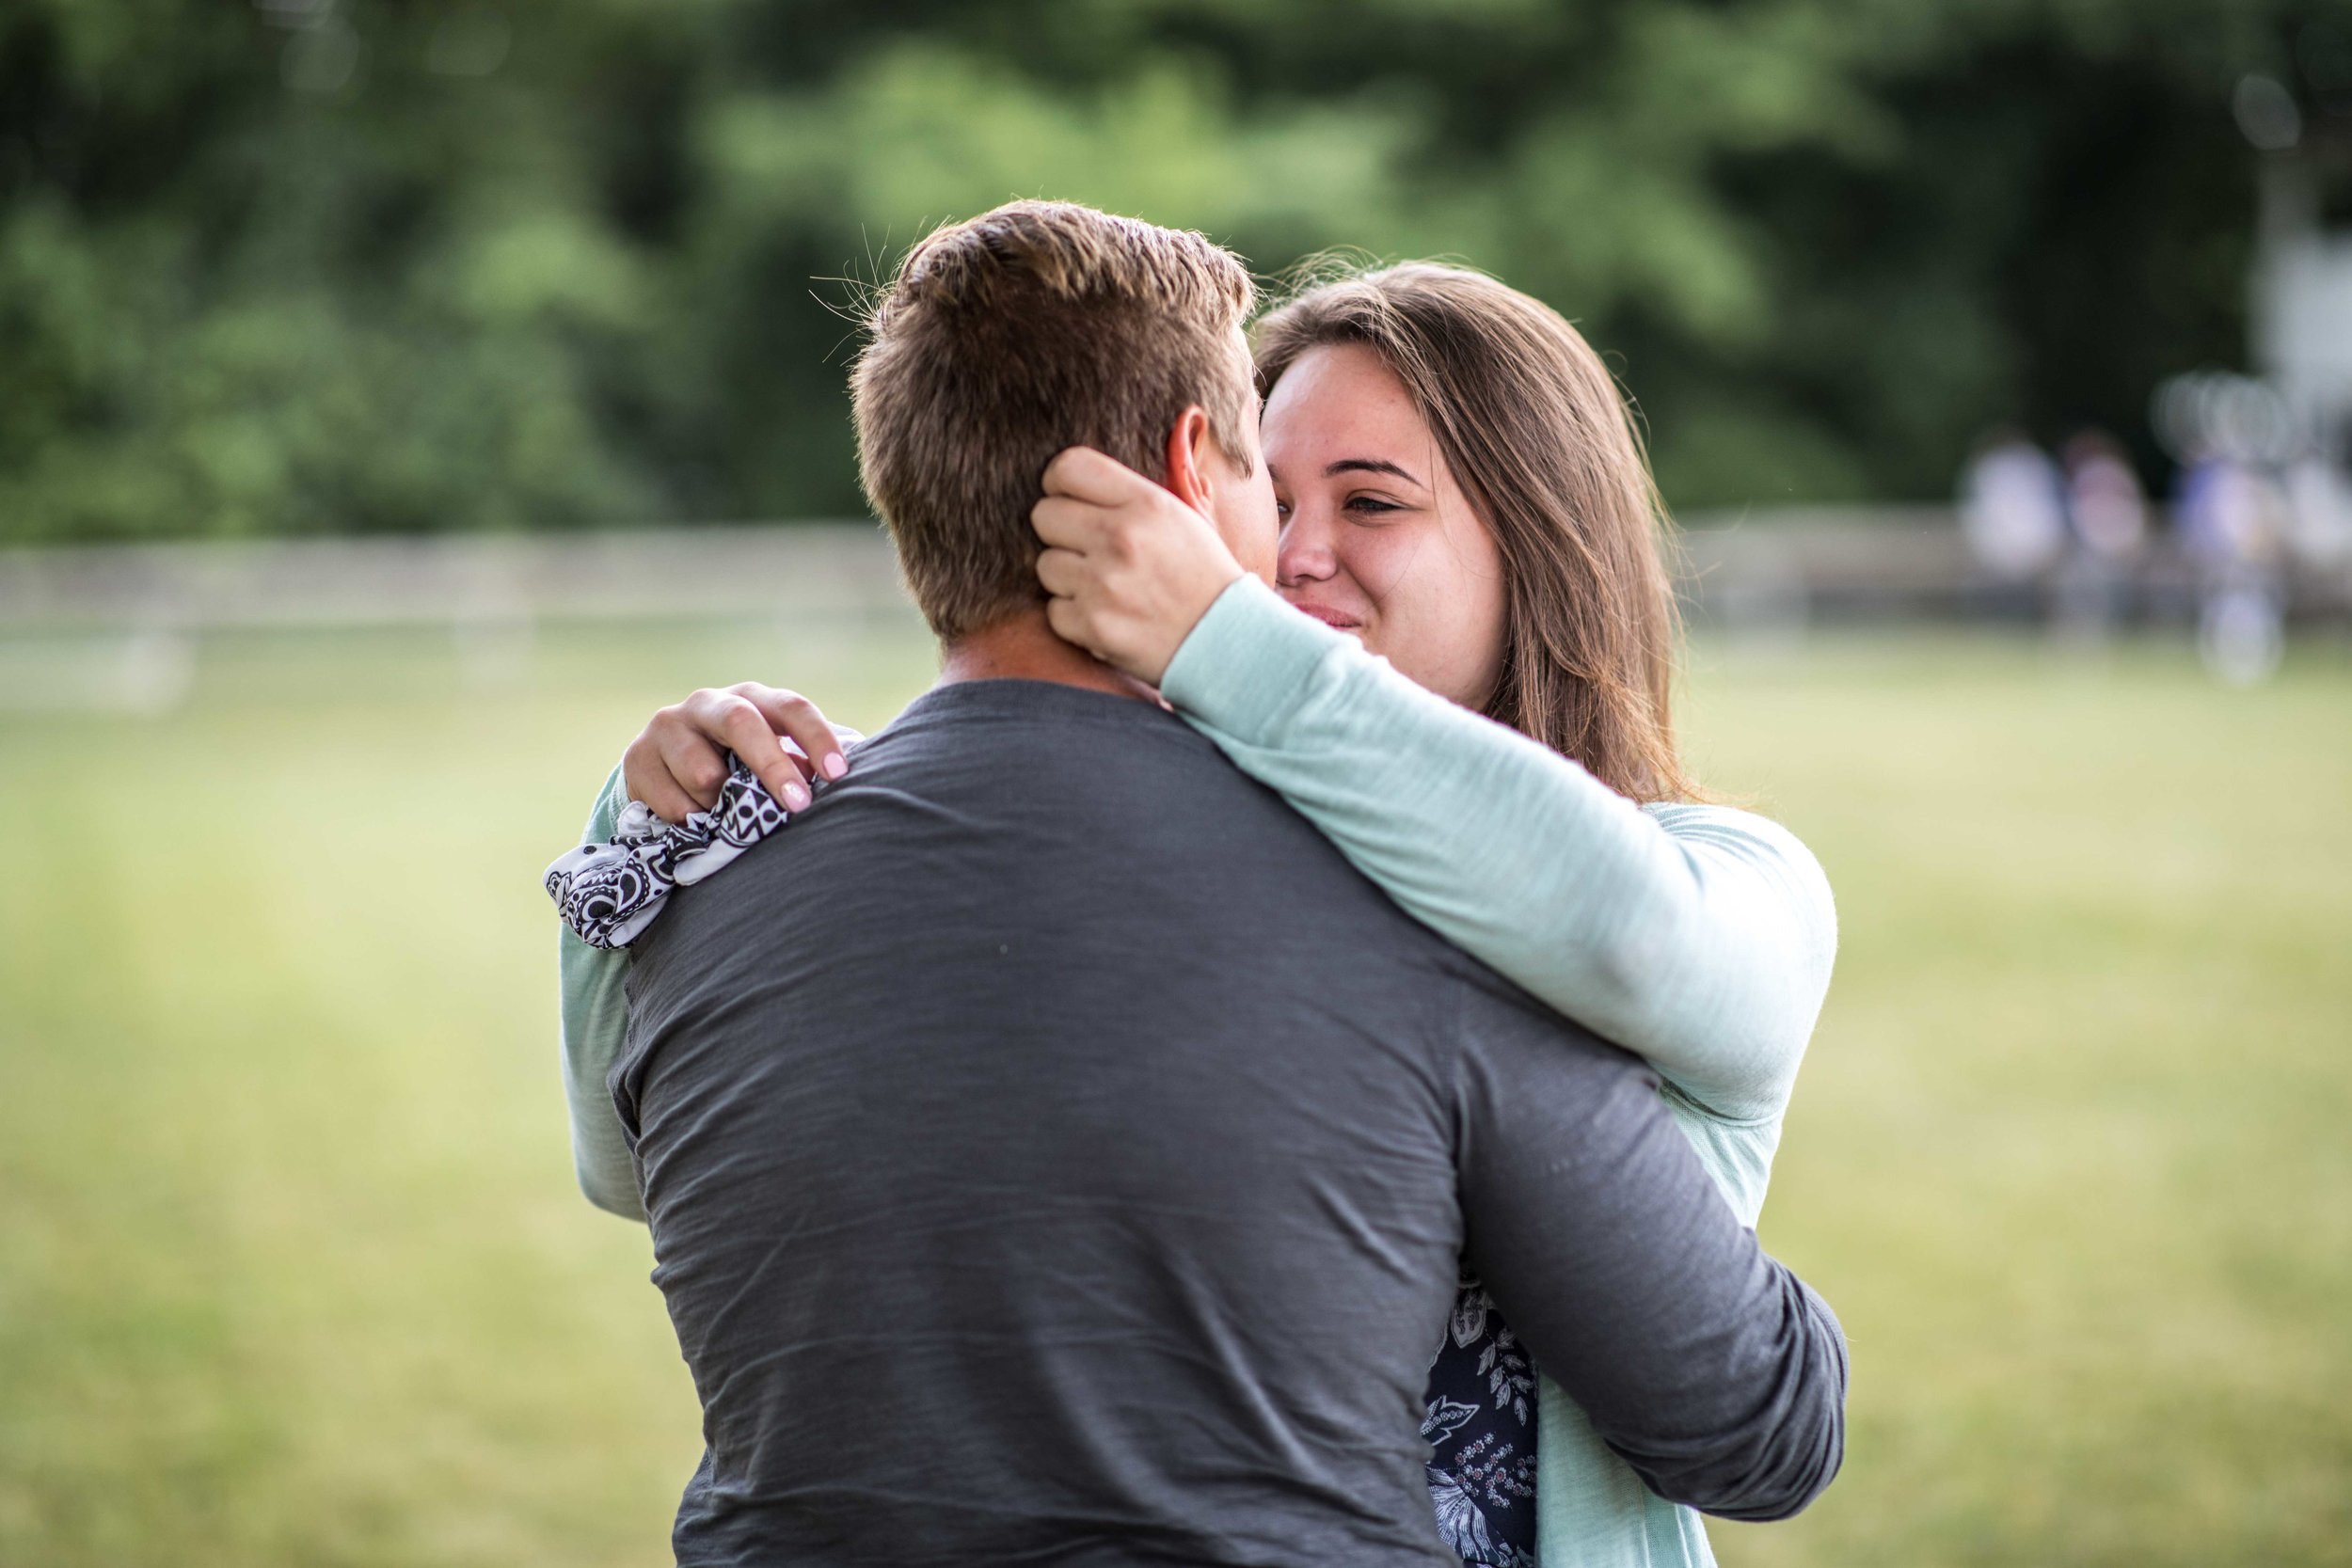  girlfriend hugs her new fiancé  